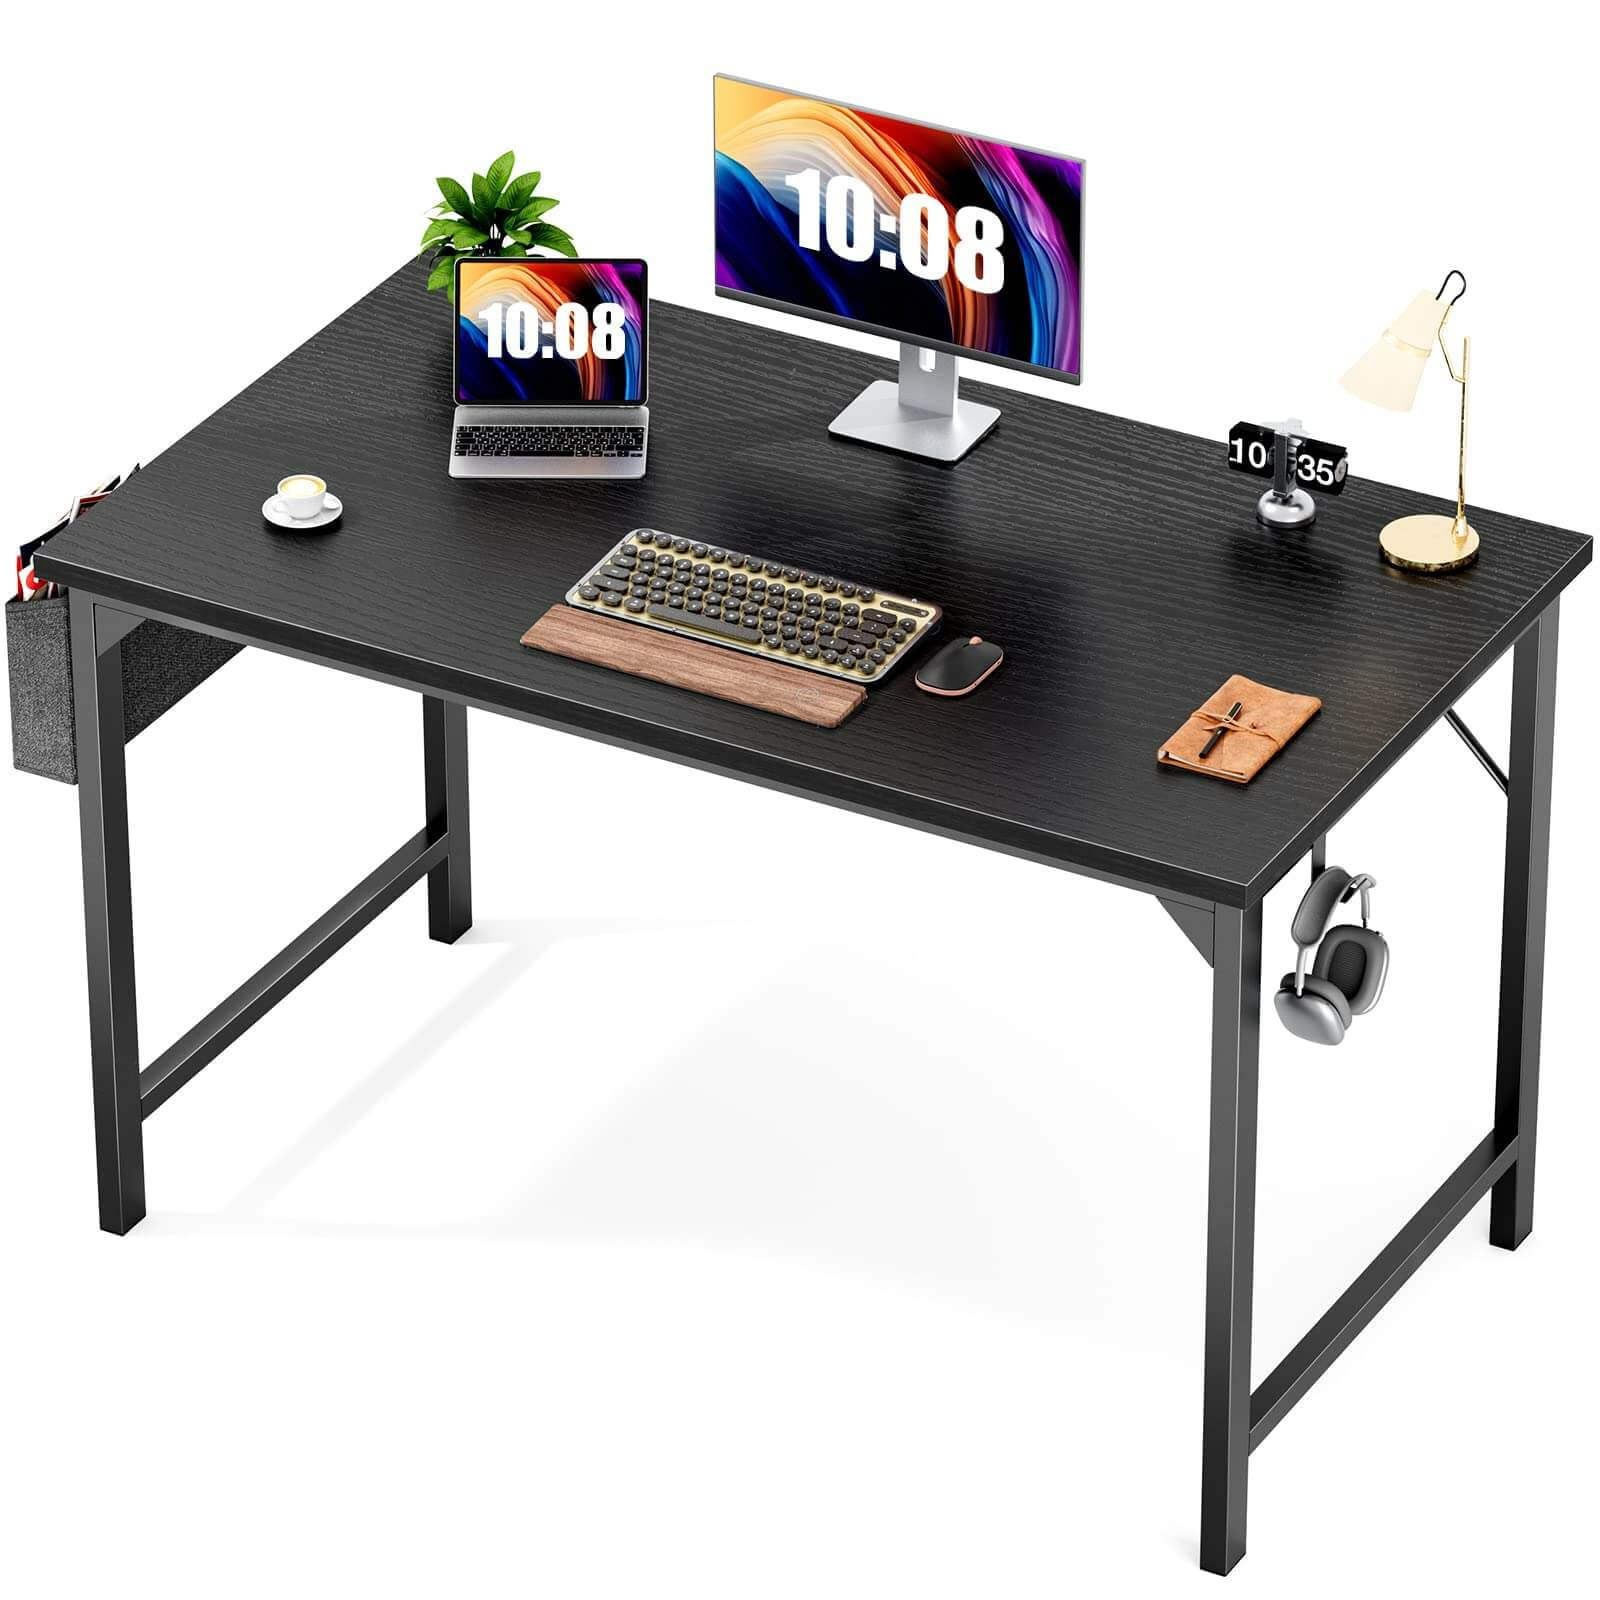 modern-wooden-office-desks#Color_Black#Size_40 Inch